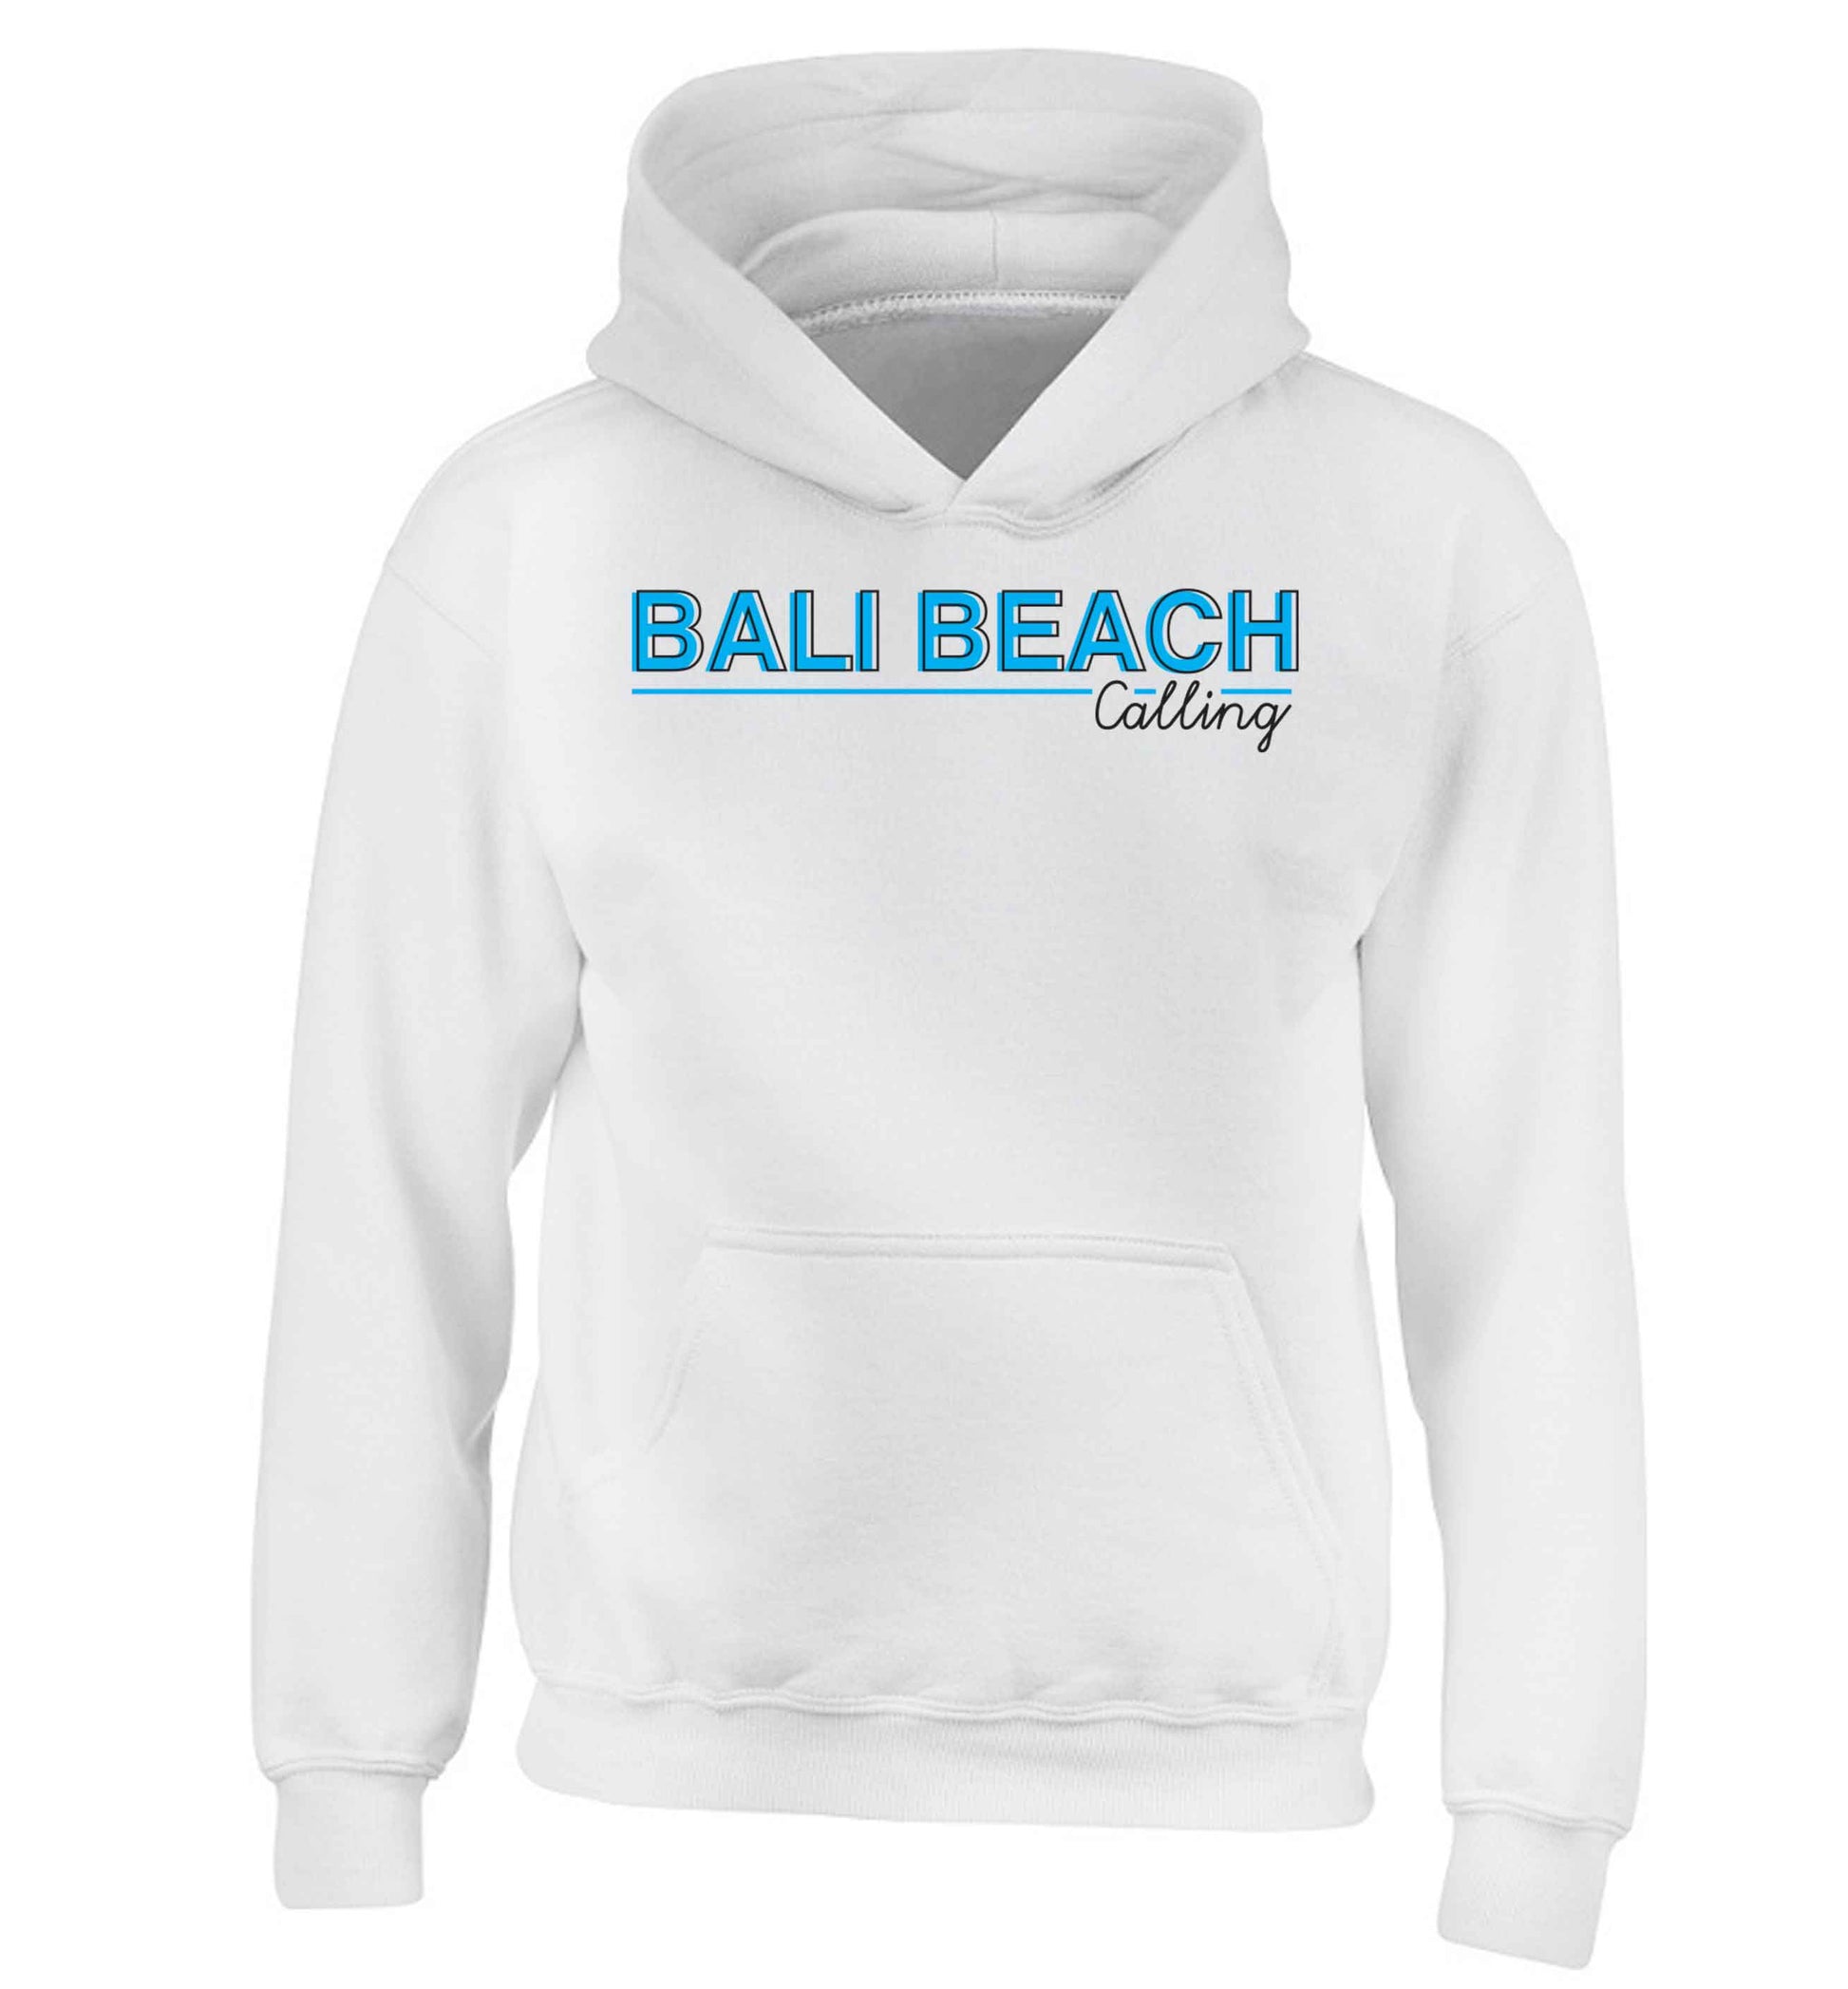 Bali beach calling children's white hoodie 12-13 Years